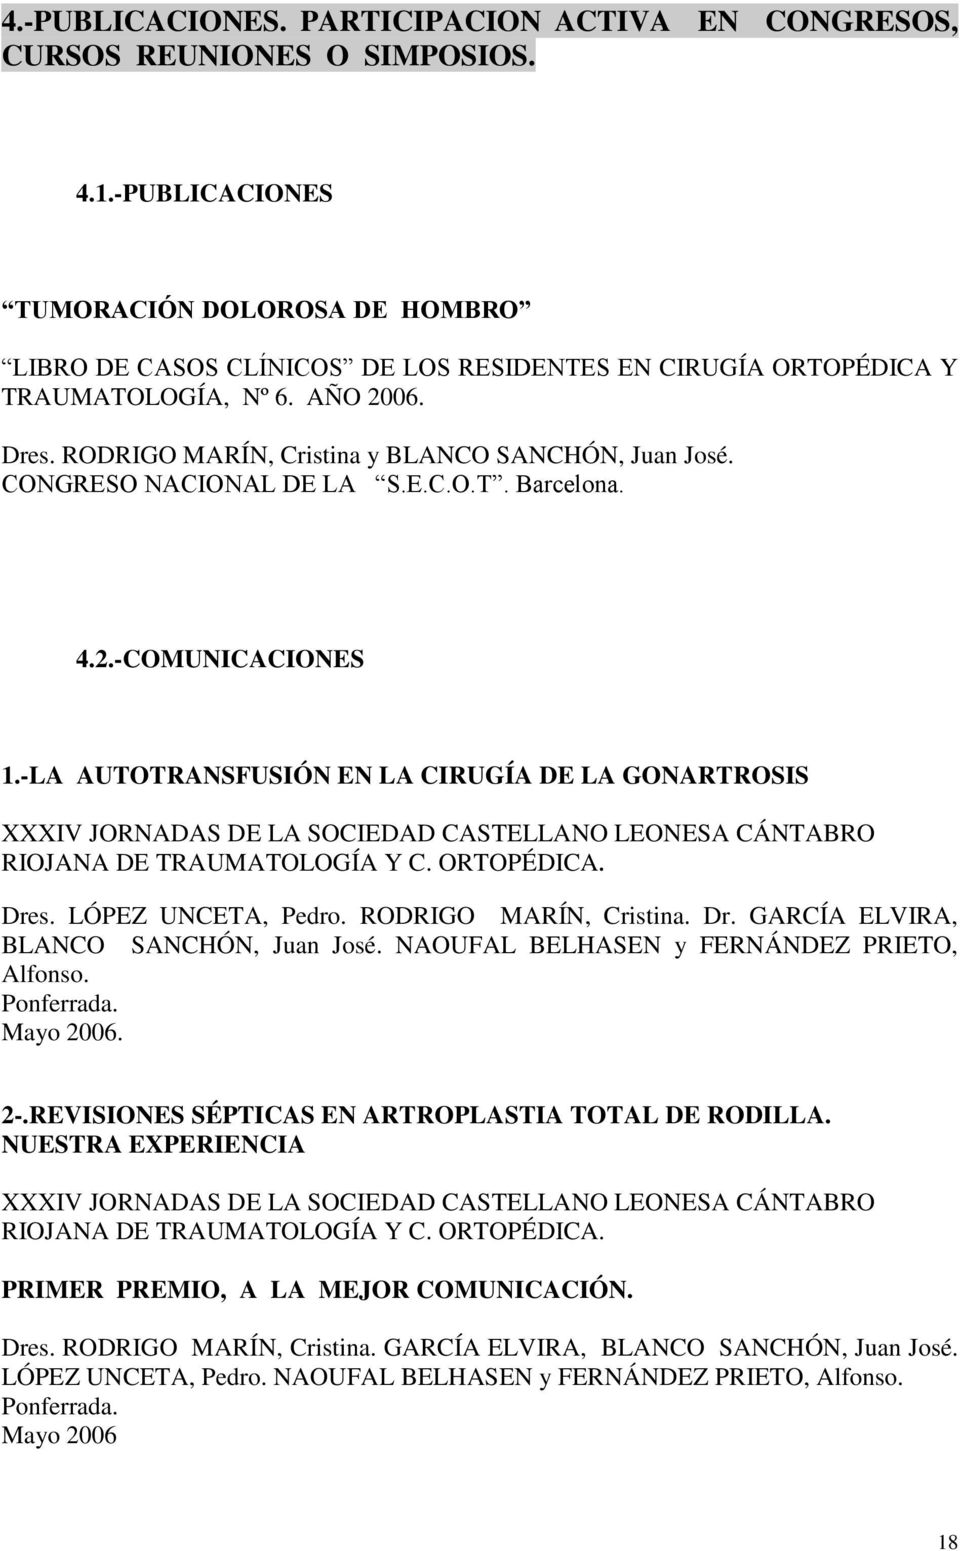 CONGRESO NACIONAL DE LA S.E.C.O.T. 4.2.-COMUNICACIONES 1.-LA AUTOTRANSFUSIÓN EN LA CIRUGÍA DE LA GONARTROSIS XXXIV JORNADAS DE LA SOCIEDAD CASTELLANO LEONESA CÁNTABRO RIOJANA DE TRAUMATOLOGÍA Y C.